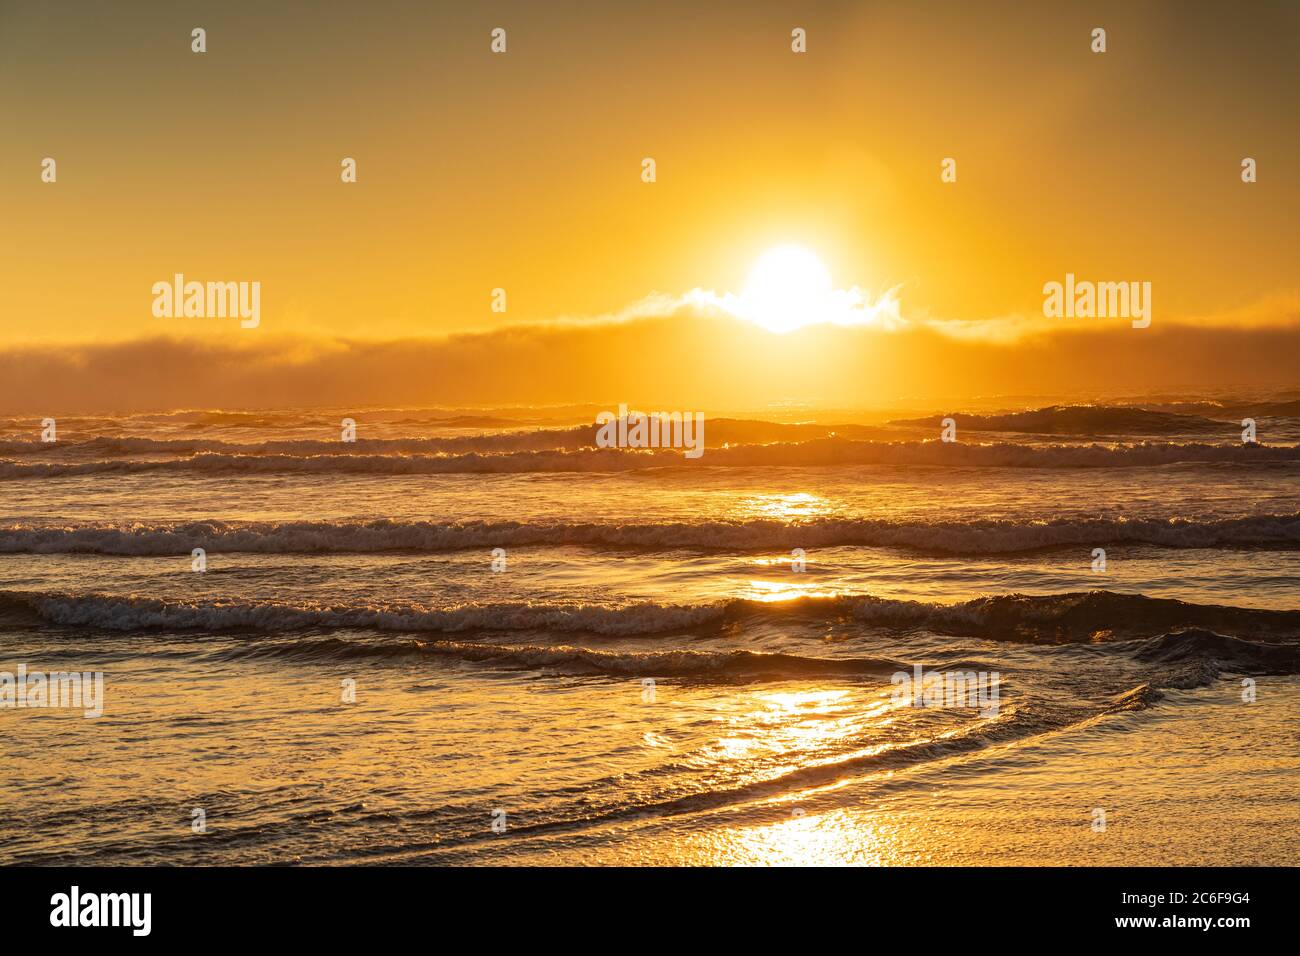 Der Sonnenuntergang in Orange sendet goldenes Licht über die Wellen, die an der Küste brechen. Stockfoto